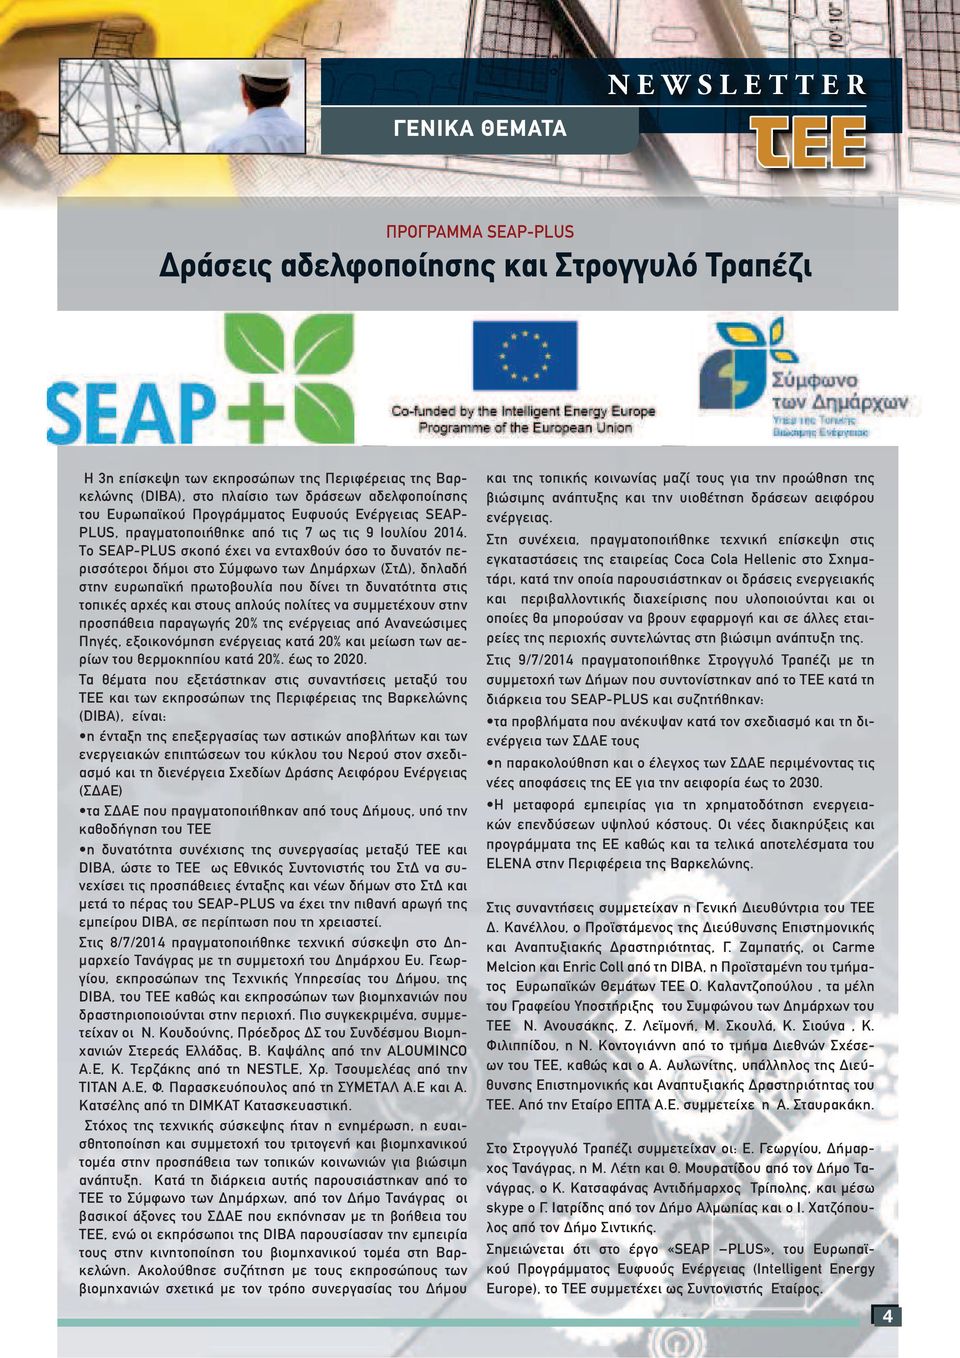 Το SEAP-PLUS σκοπό έχει να ενταχθούν όσο το δυνατόν περισσότεροι δήµοι στο Σύµφωνο των ηµάρχων (Στ ), δηλαδή στην ευρωπαϊκή πρωτοβουλία που δίνει τη δυνατότητα στις τοπικές αρχές και στους απλούς